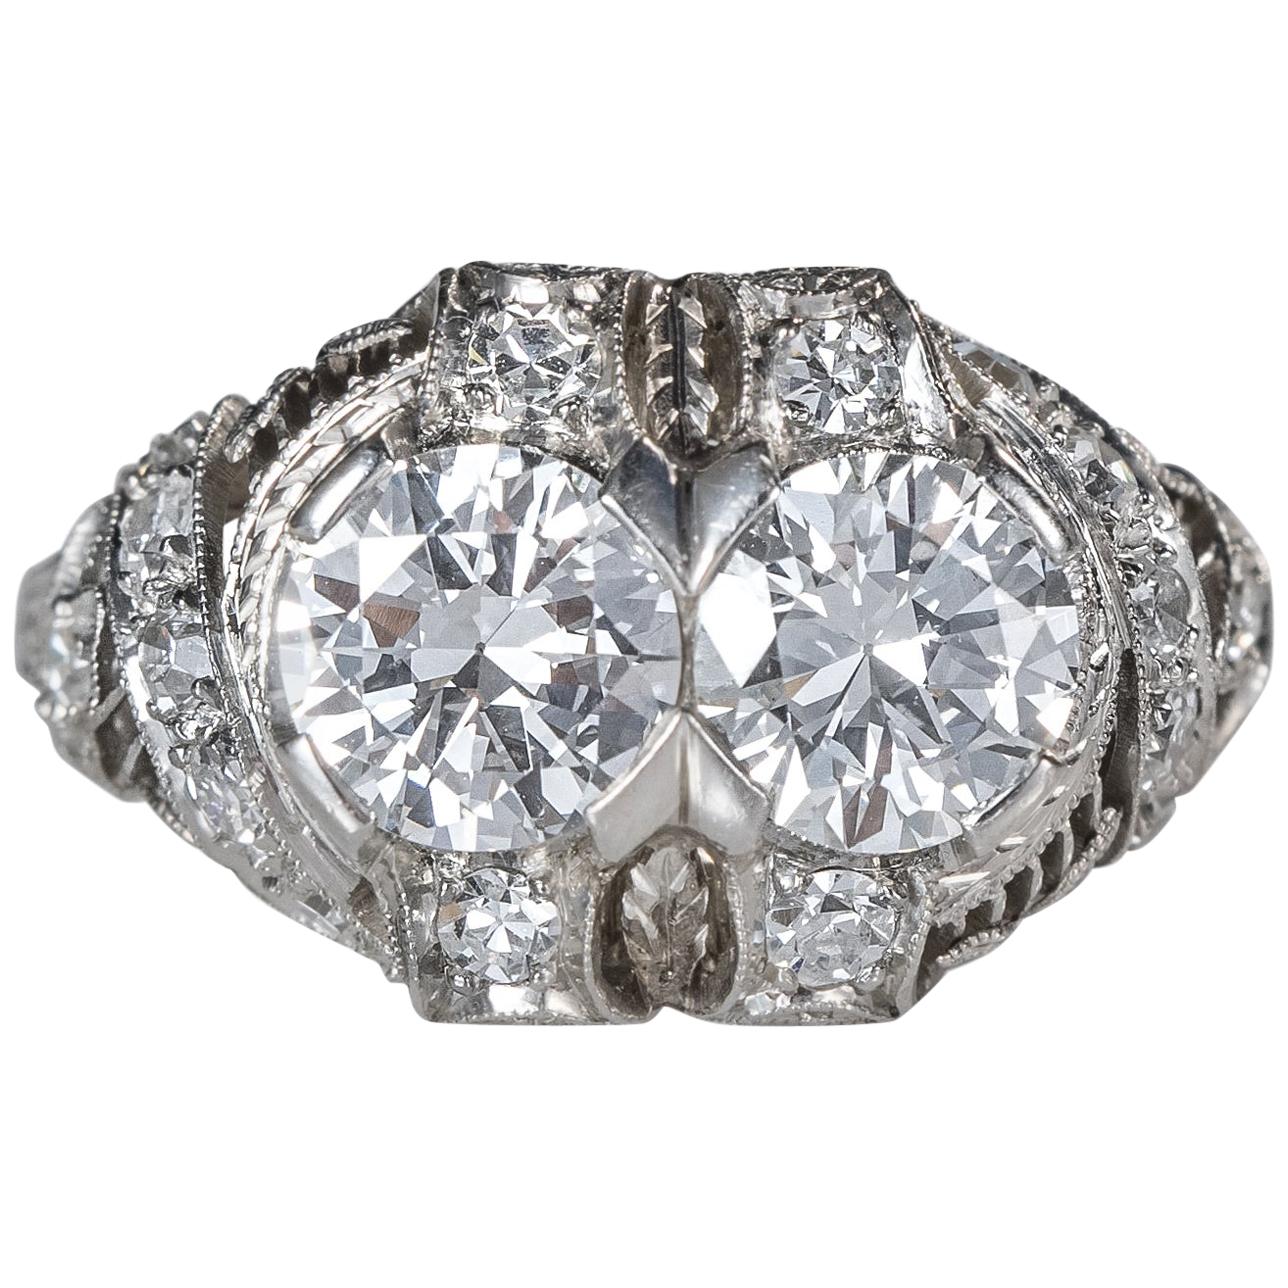 1920s Art Deco 1.90 Carat Total Diamond Engagement Ring, Platinum